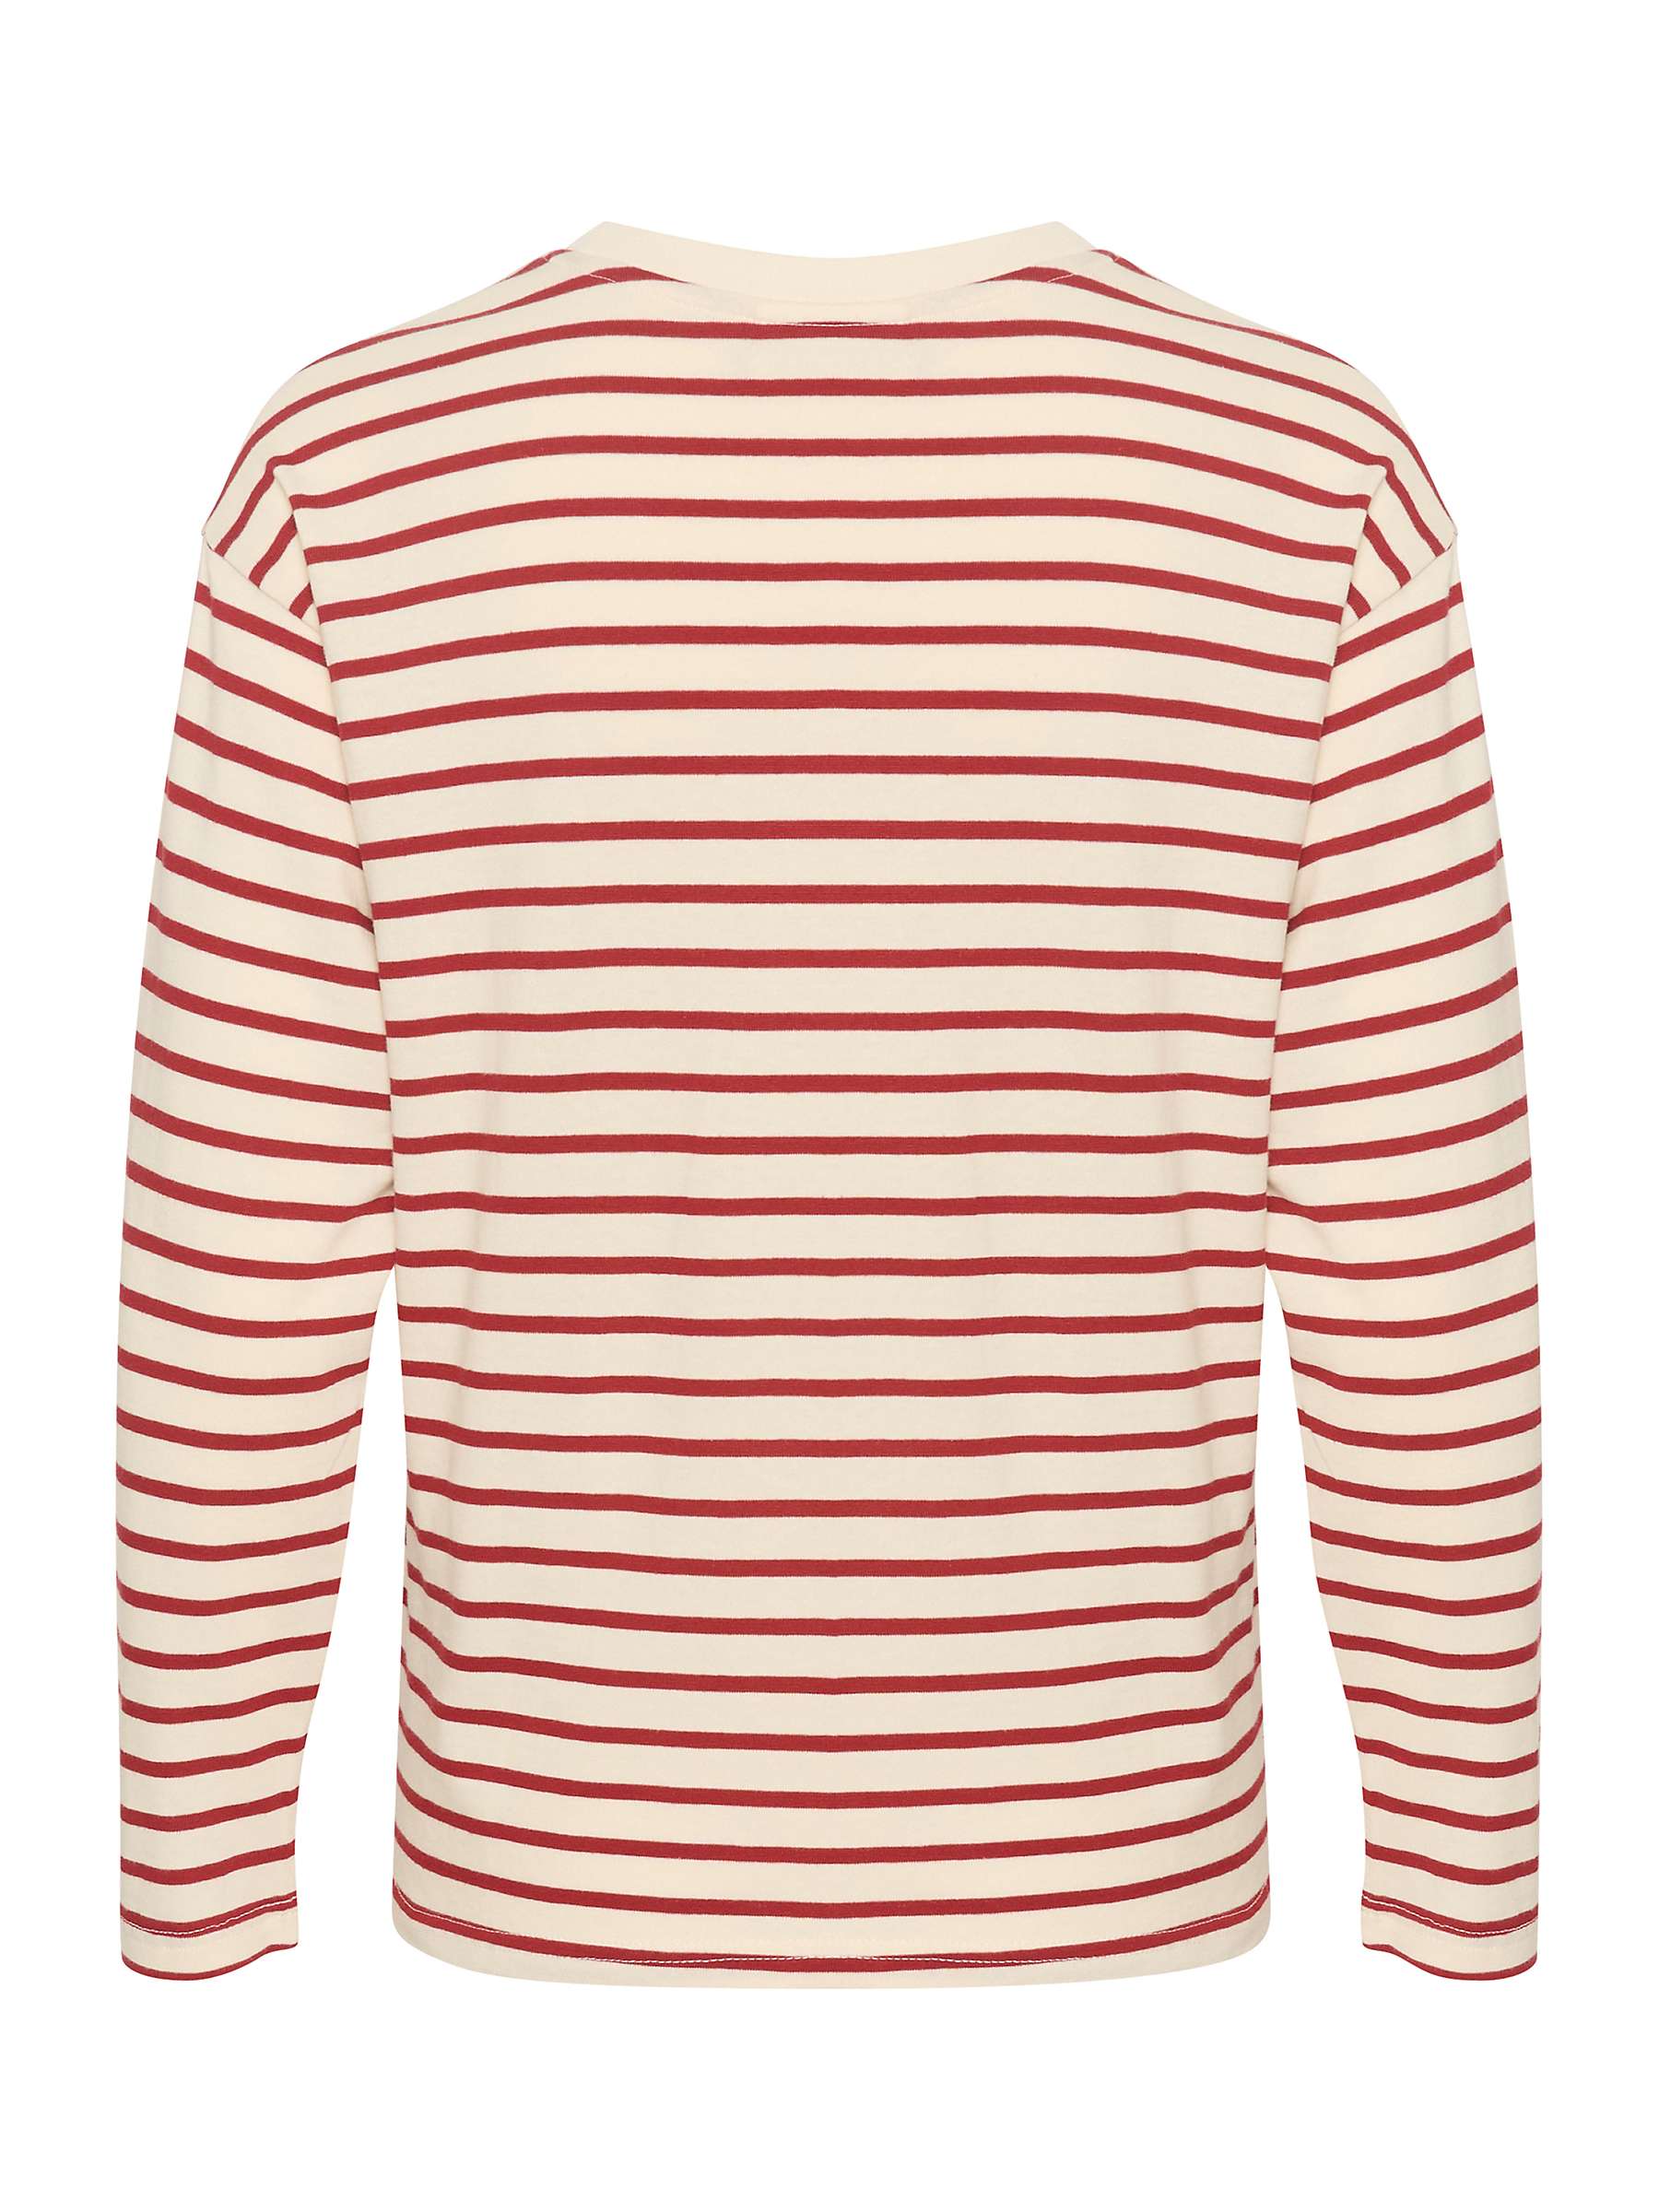 Buy KAFFE Winny Stripe Jersey Top Online at johnlewis.com